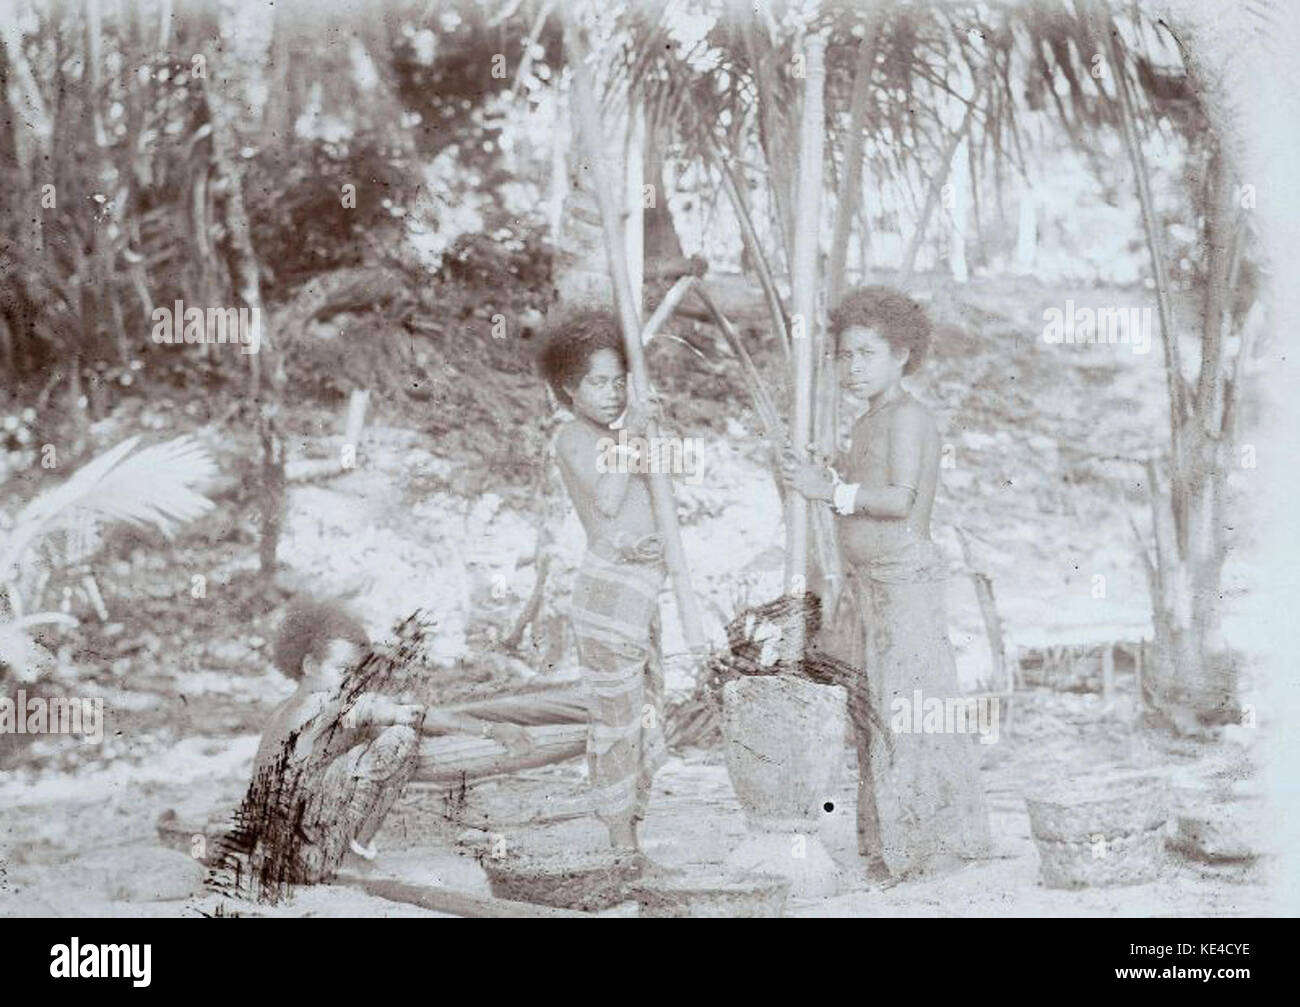 Papuan girls pounding rice   Collectie stichting Nationaal Museum van Wereldculturen   TM 60010161 Stock Photo